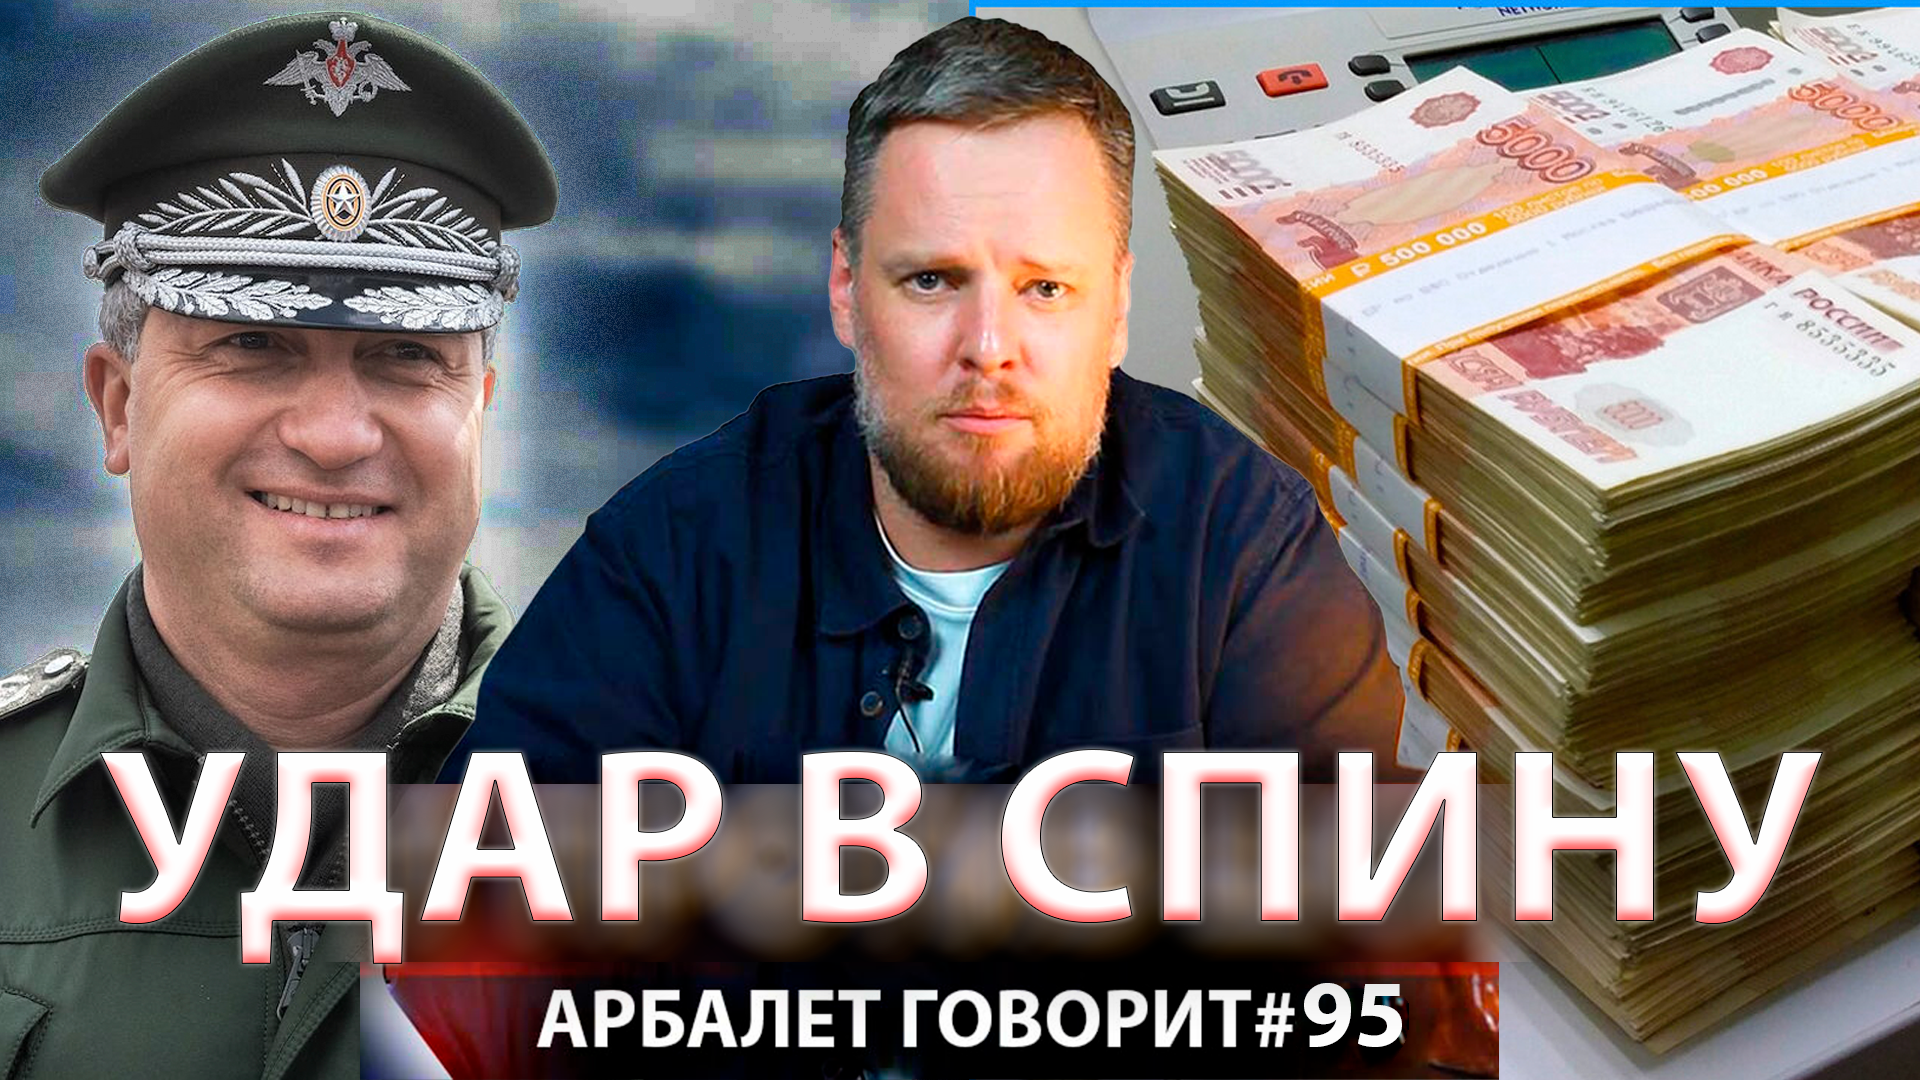 Арбалет говорит #95 - Не удалось даже врагу: что сделал Тимур Иванов?